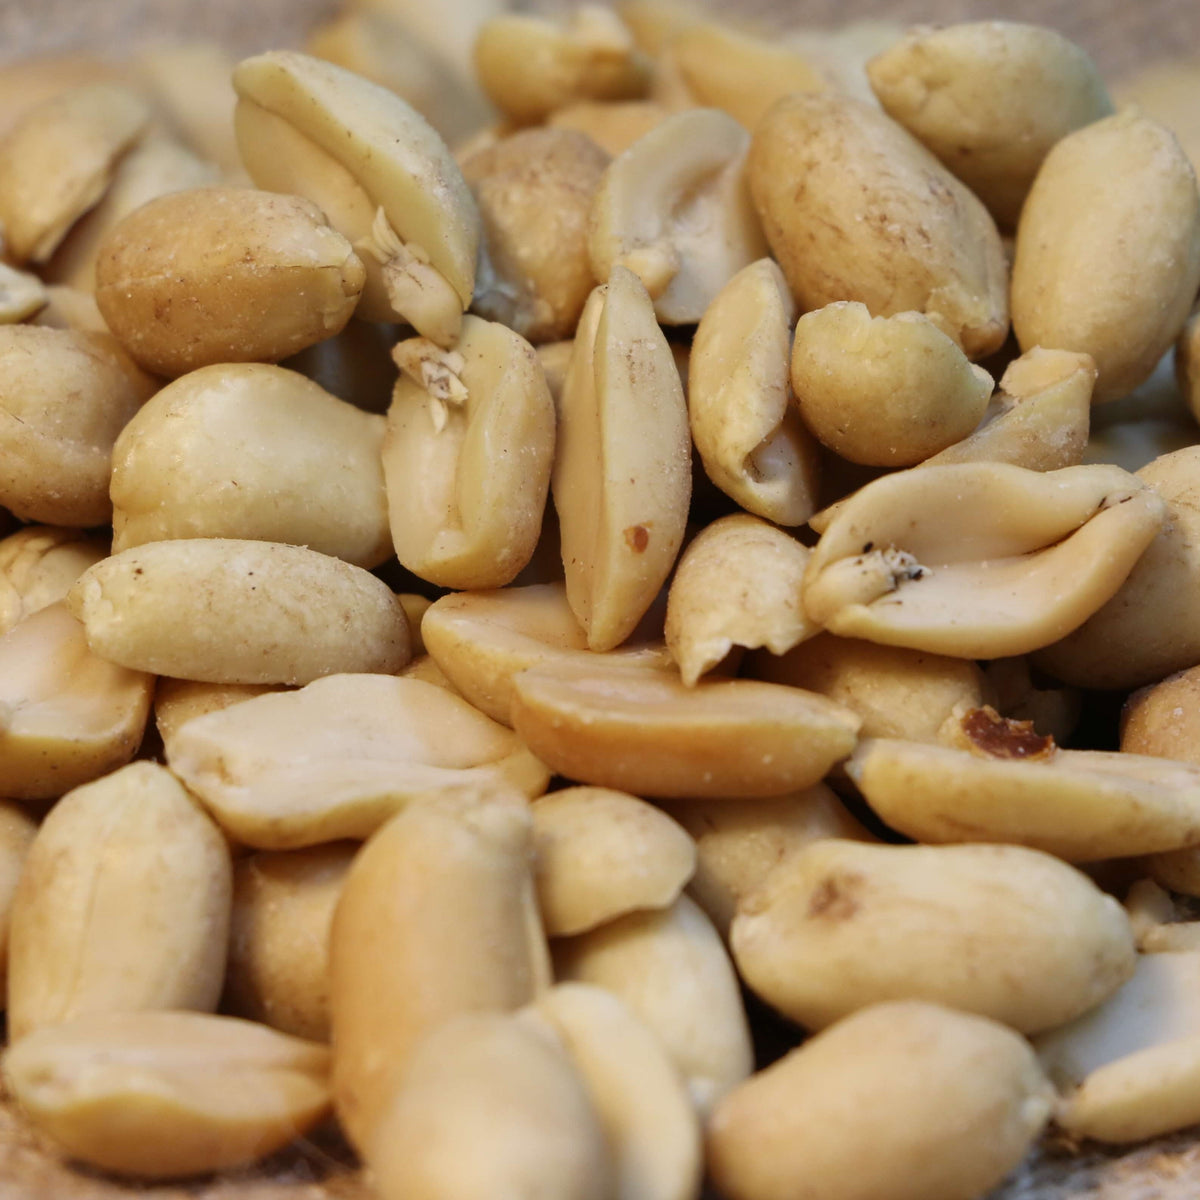 Peanuts - Roasted Salted